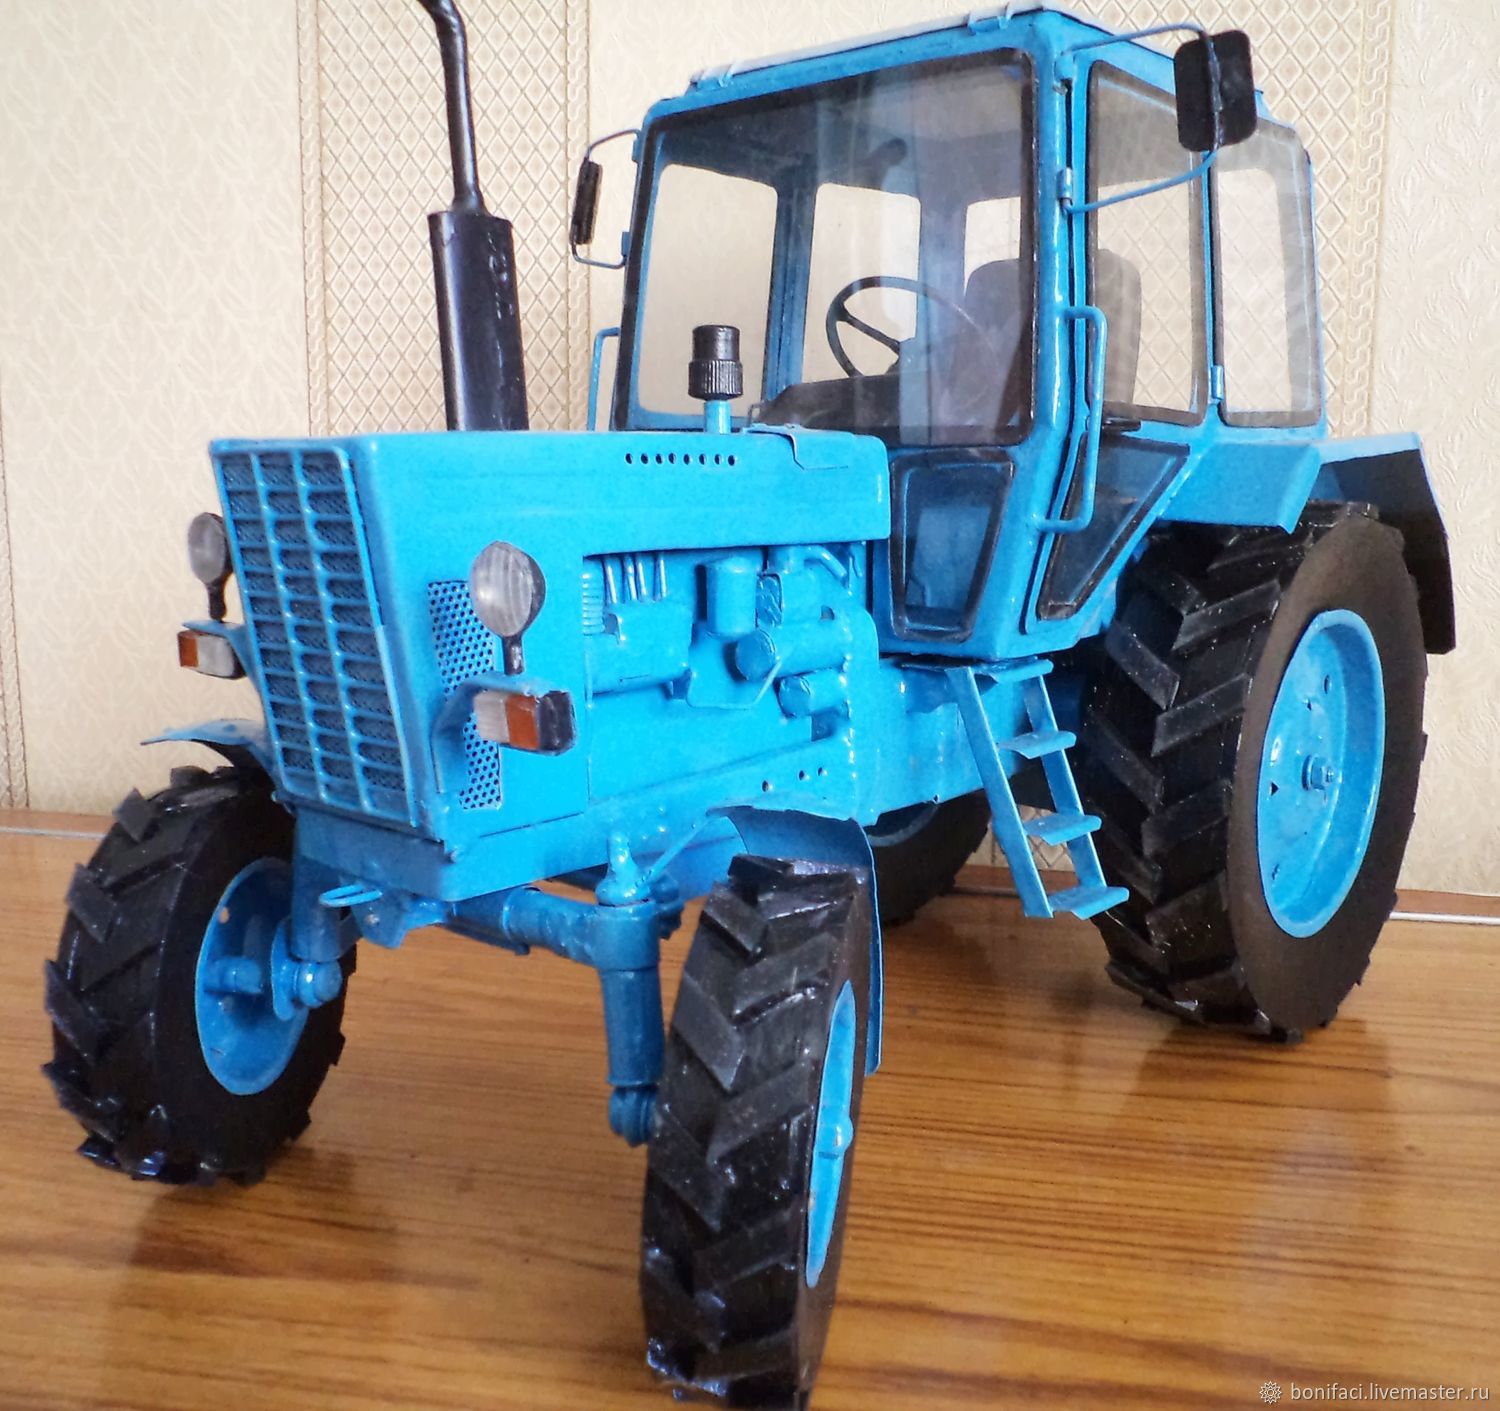 Трактор купить цена недорого. Модель трактора МТЗ-80. Синий трактор МТЗ 80. Трактор синий модель МТЗ 82. Трактор Беларусь модель МТЗ-80.